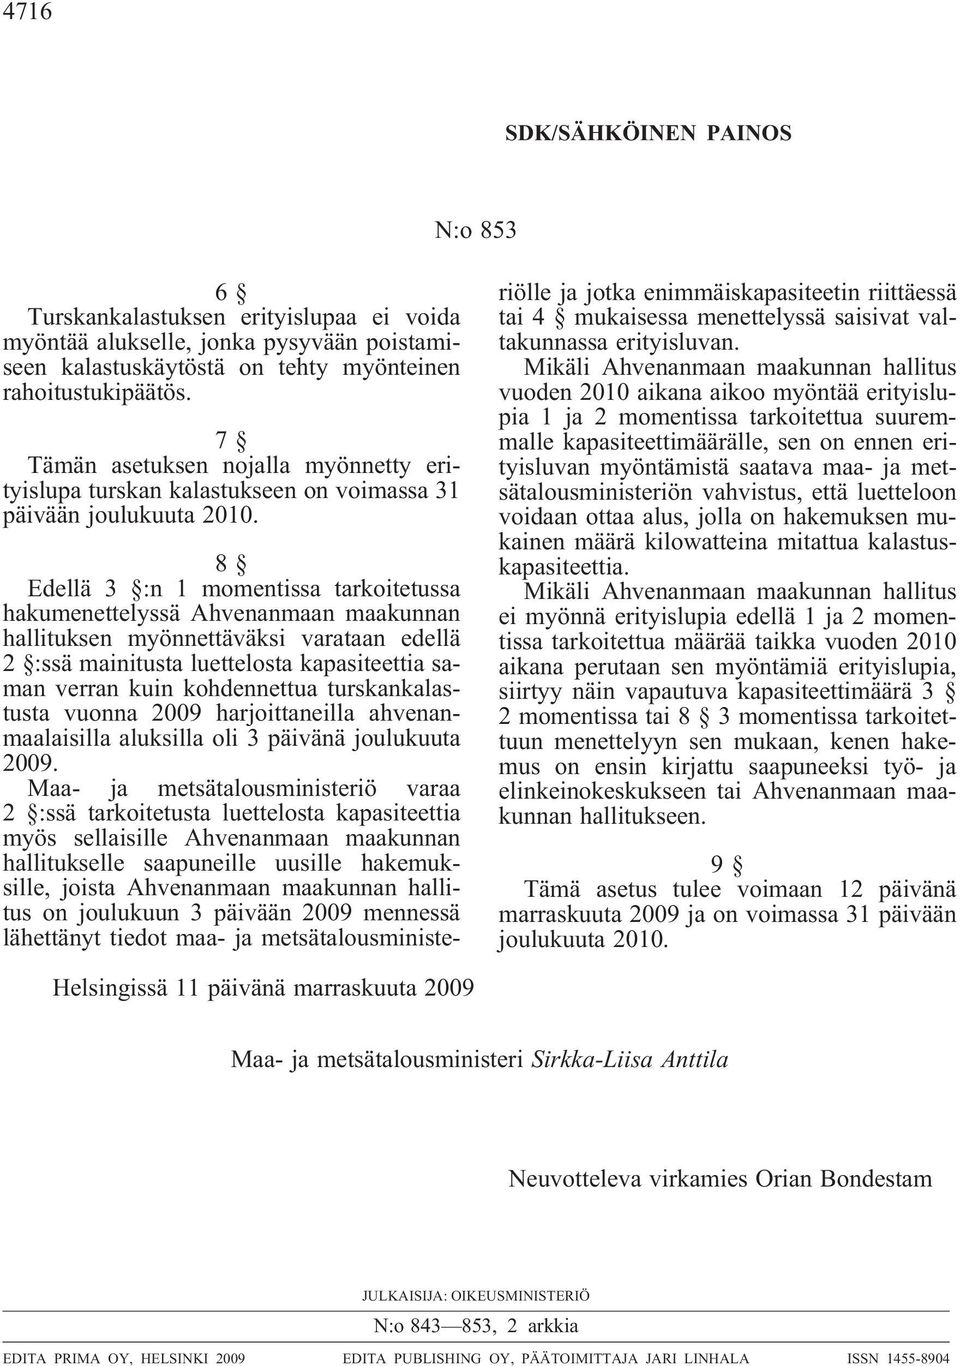 8 Edellä 3 :n 1 momentissa tarkoitetussa hakumenettelyssä Ahvenanmaan maakunnan hallituksen myönnettäväksi varataan edellä 2 :ssä mainitusta luettelosta kapasiteettia saman verran kuin kohdennettua